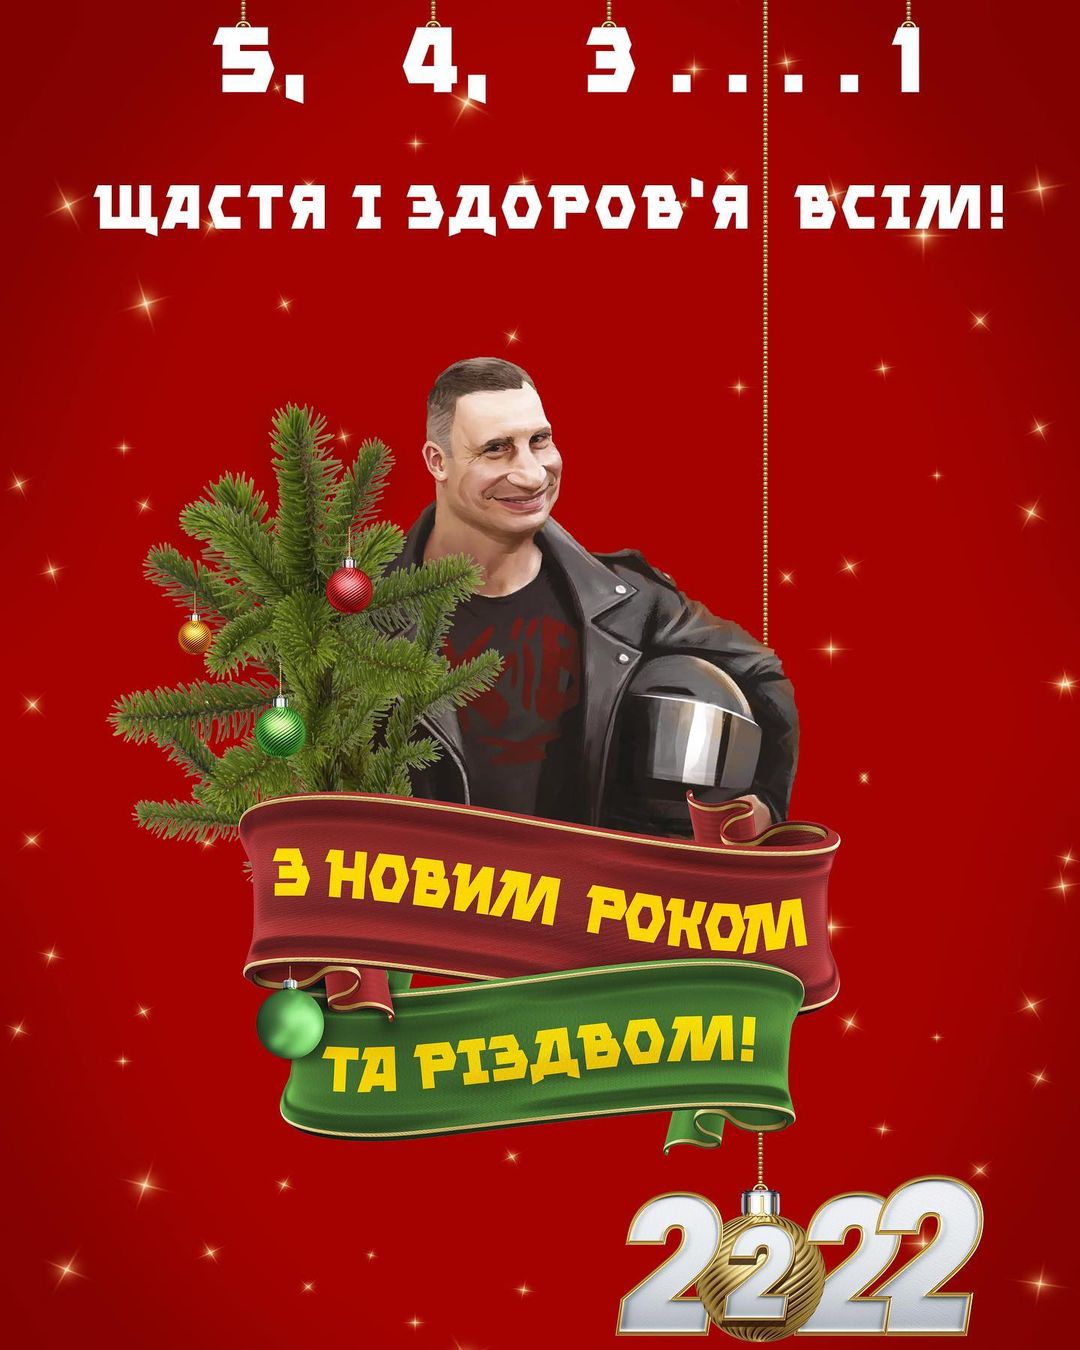 Свежие мемы от Кличко поместились в один поздравительный плакат. Фото:  instagram.com/vitaliyklitschko